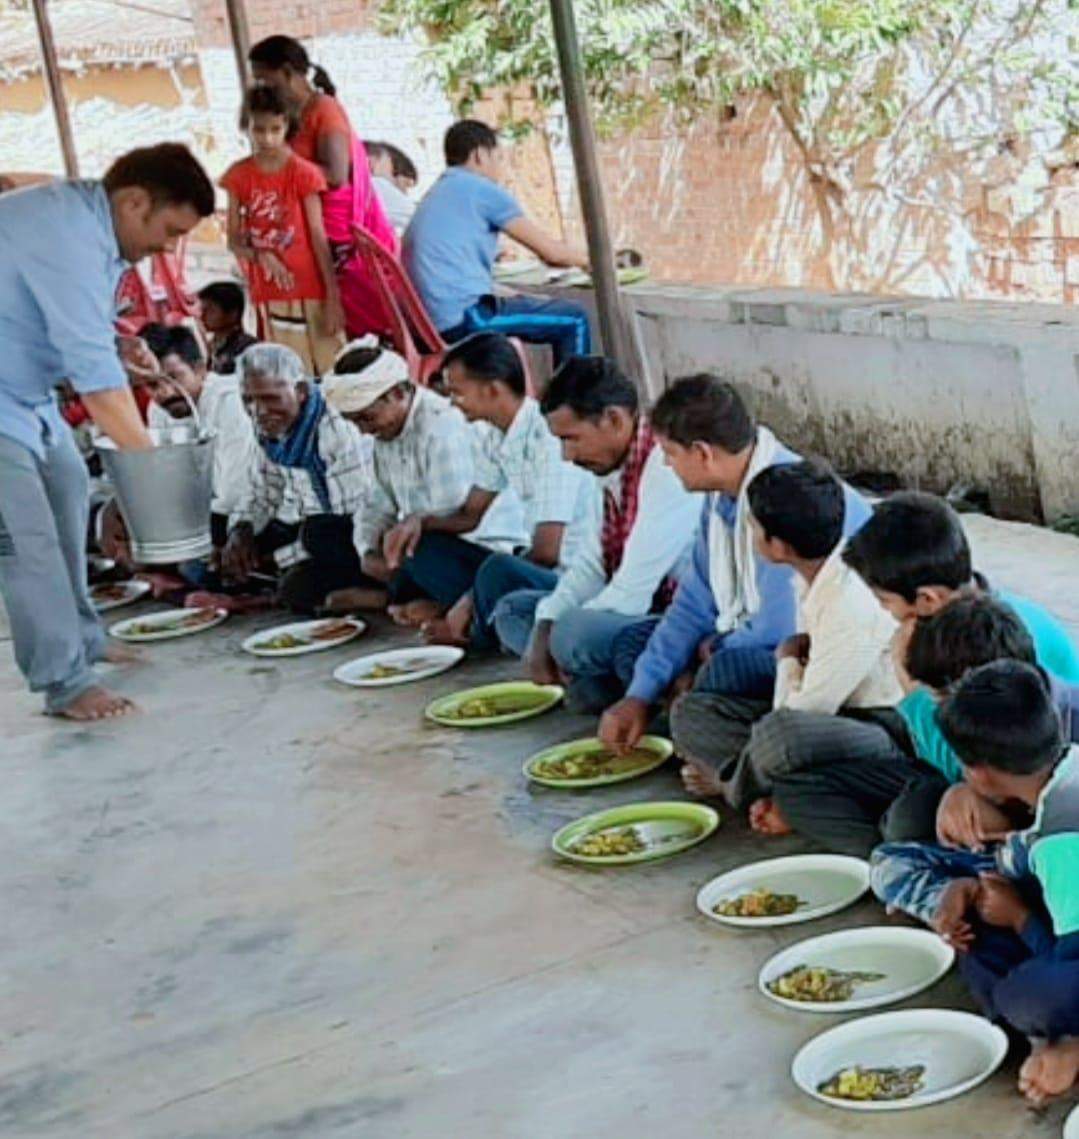 नौगढ़ में जन सेवा समिति ट्रस्ट का भंडारा, गरीबों को विनय जायसवाल ने कराया भोजन